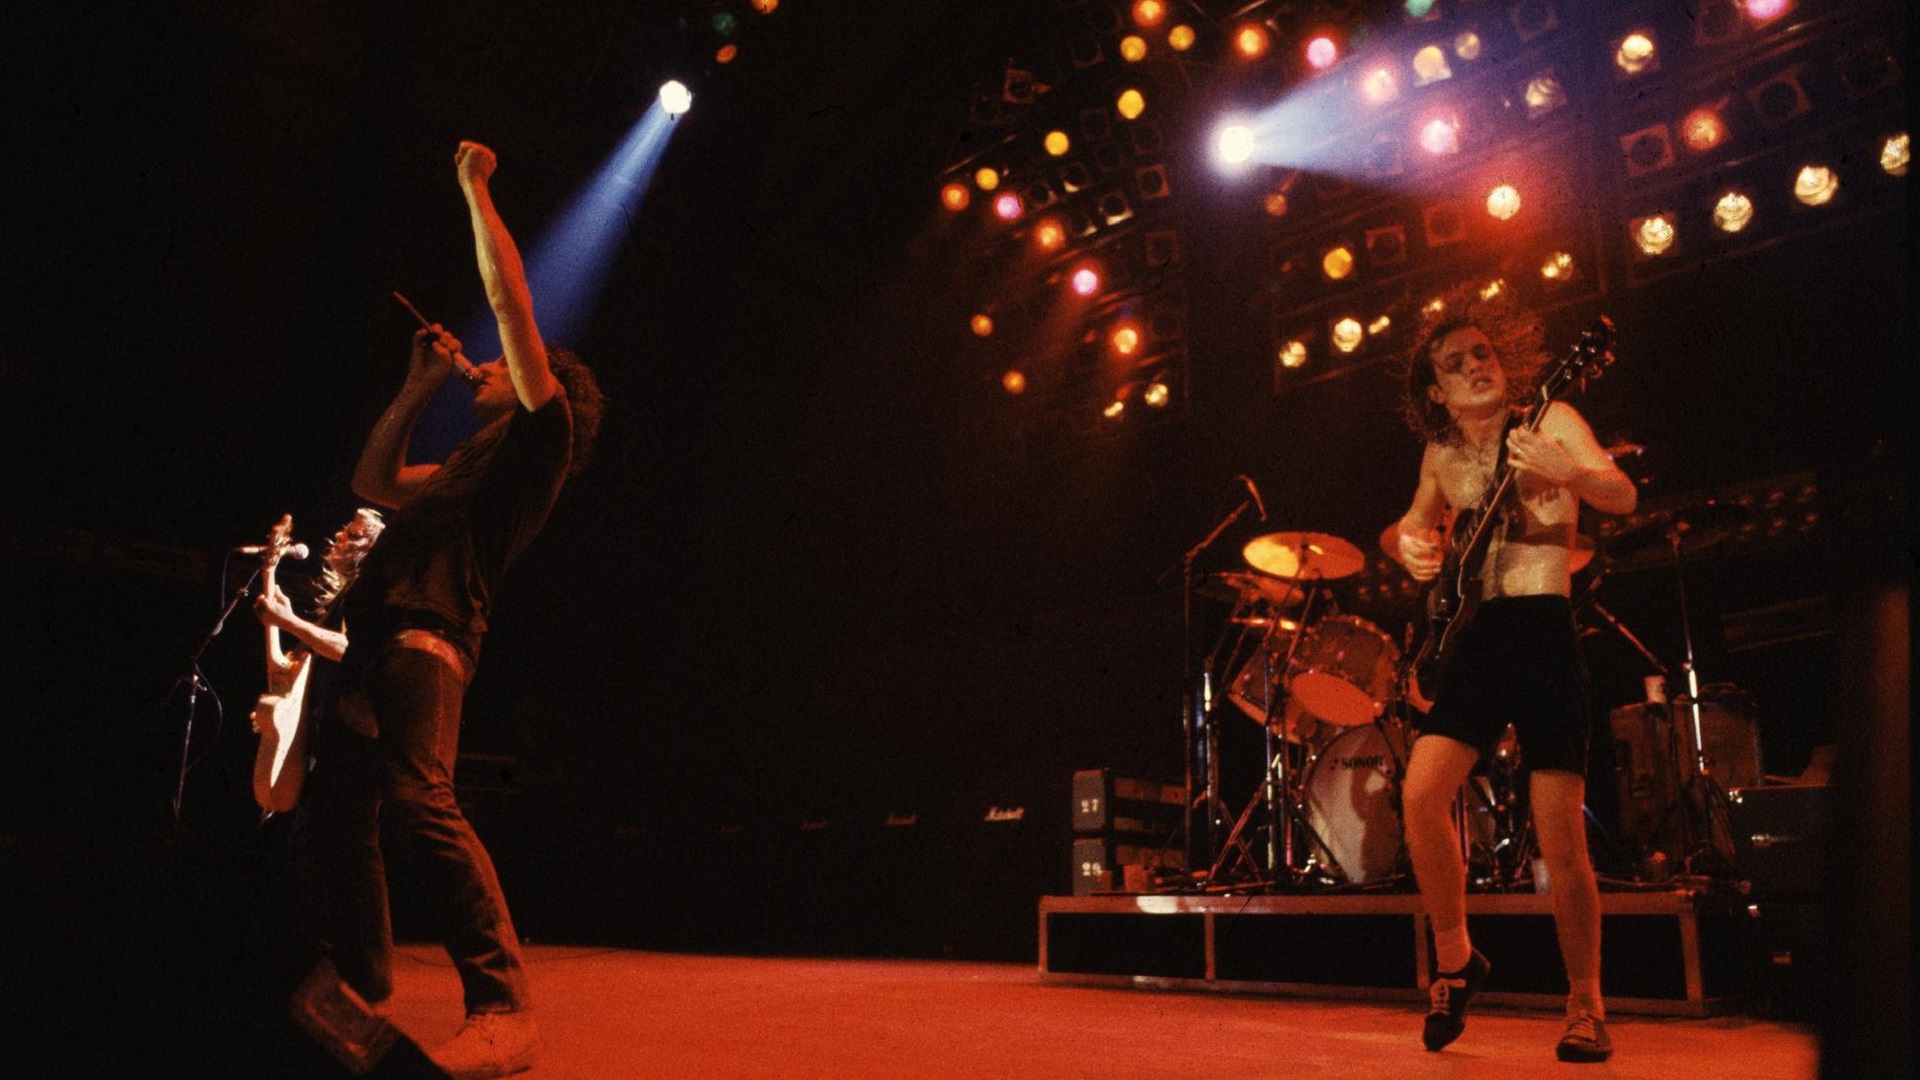 Se cumplen 40 años del 'Back in black' de AC/DC